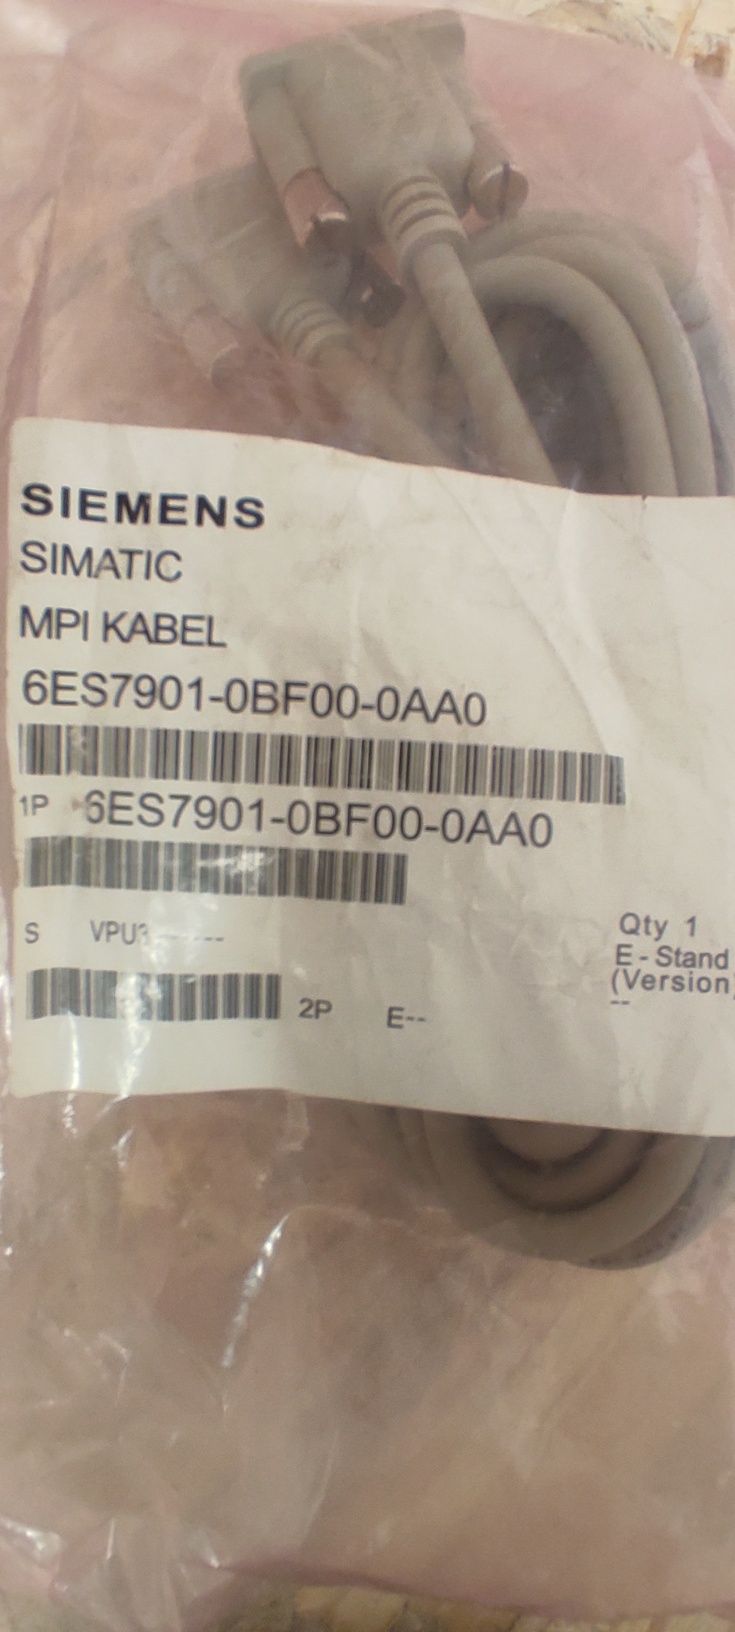 Siemens Simatic kabel